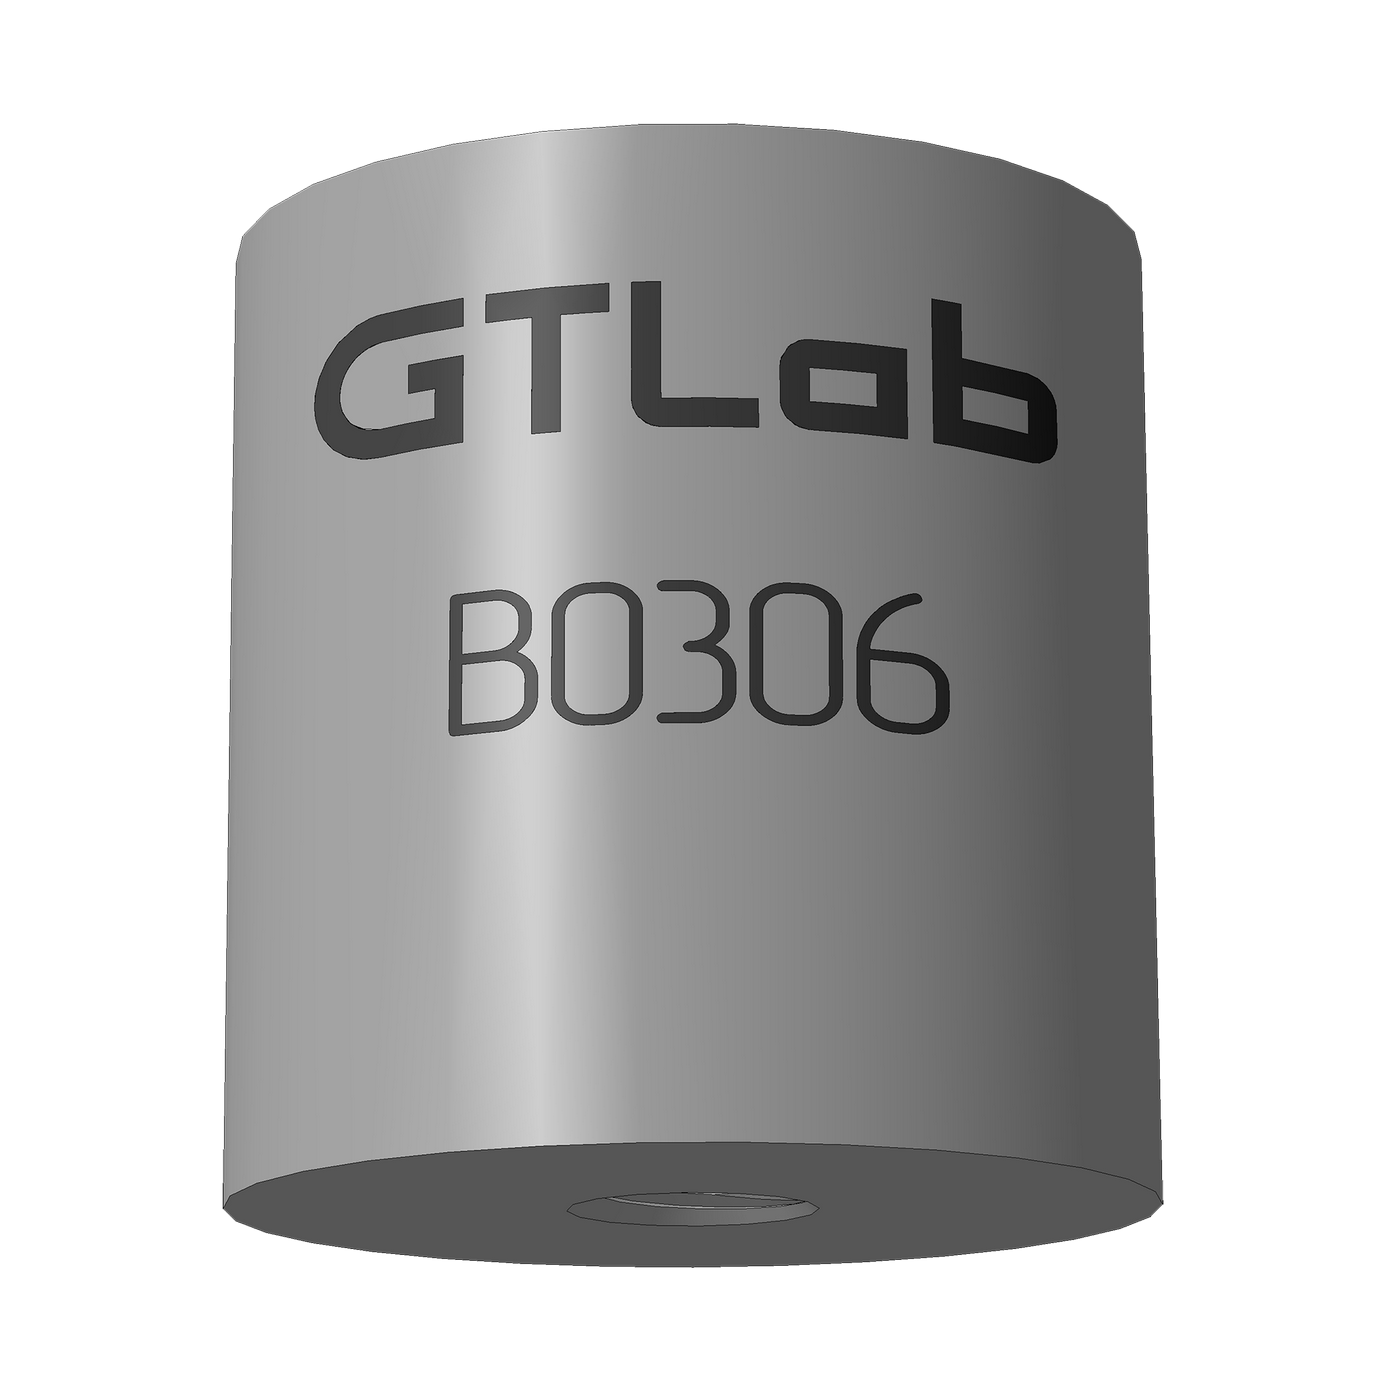 GTLAB B0306 Адаптеры интерфейсов